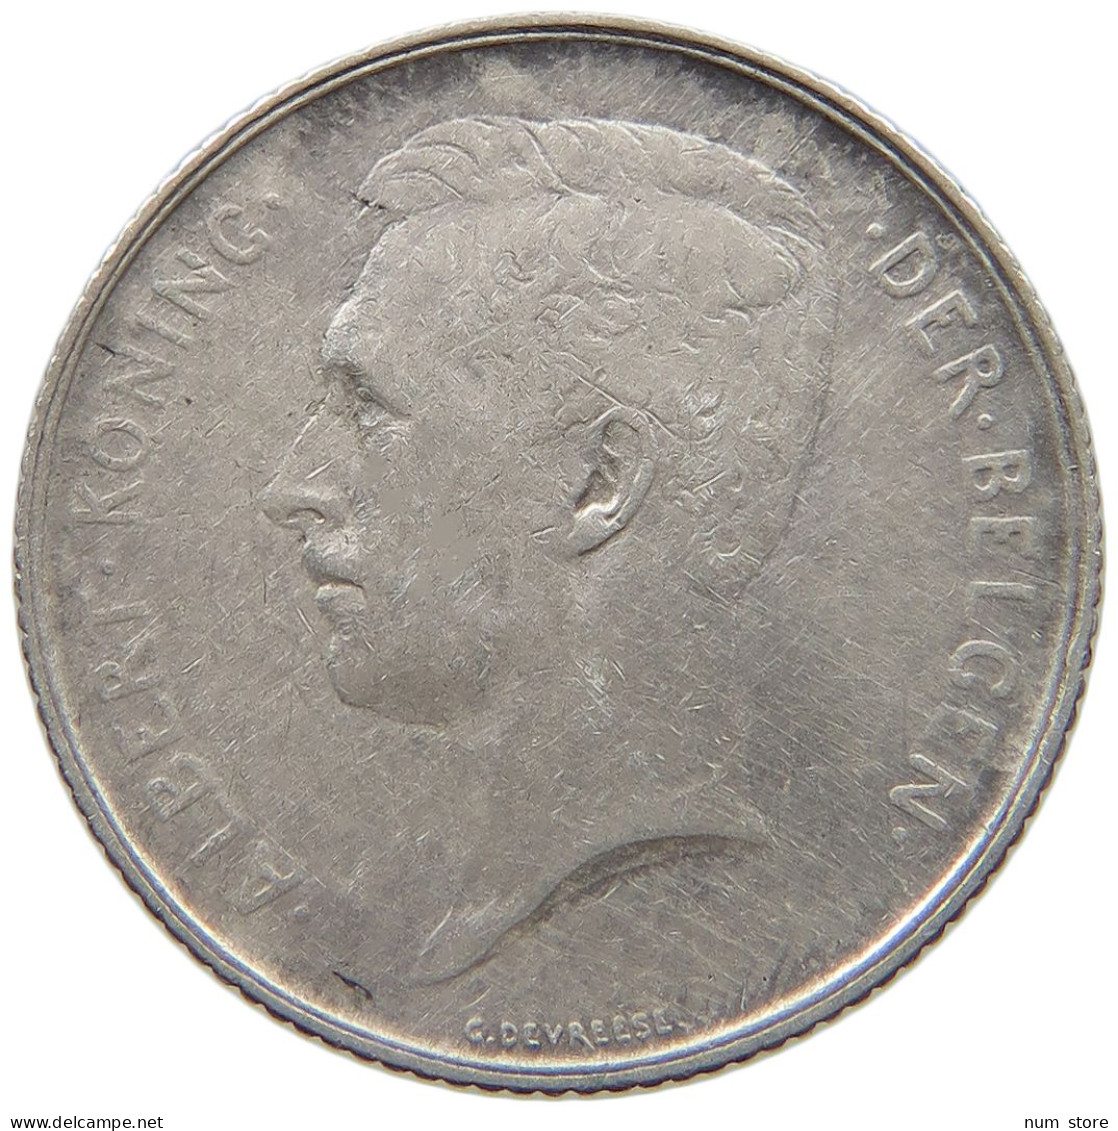 BELGIUM FRANC 1911 Albert I. 1909-1934 #c003 0315 - 1 Franc